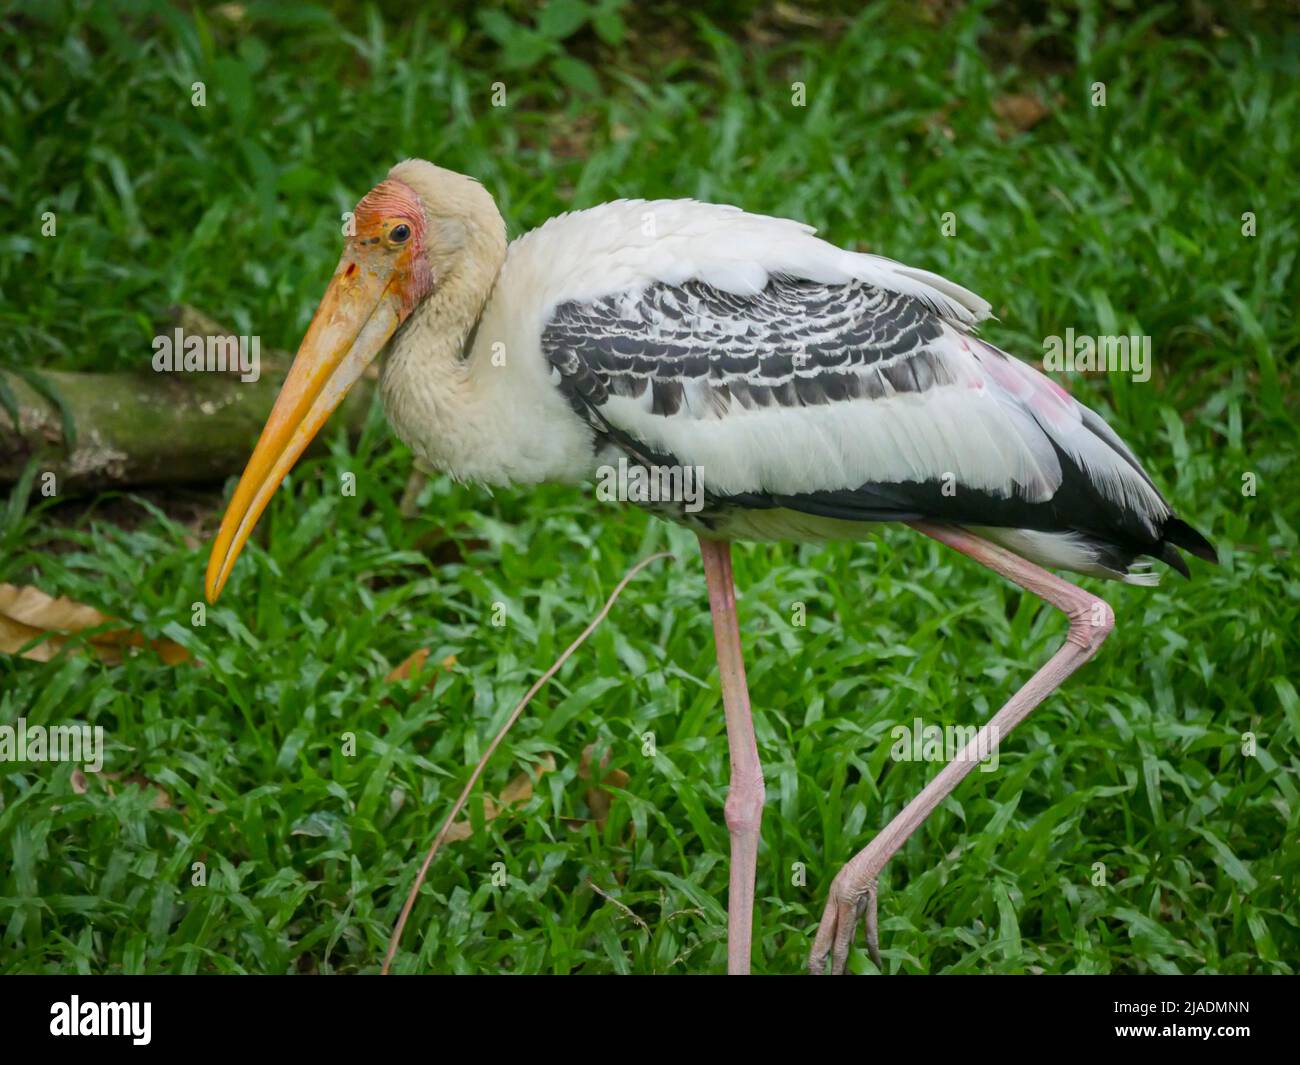 Der amerikanische Weißibis-Vogel (Eudocimus albus) ist eine Vogelart der ibis-Familie, die im Park unterwegs ist Stockfoto